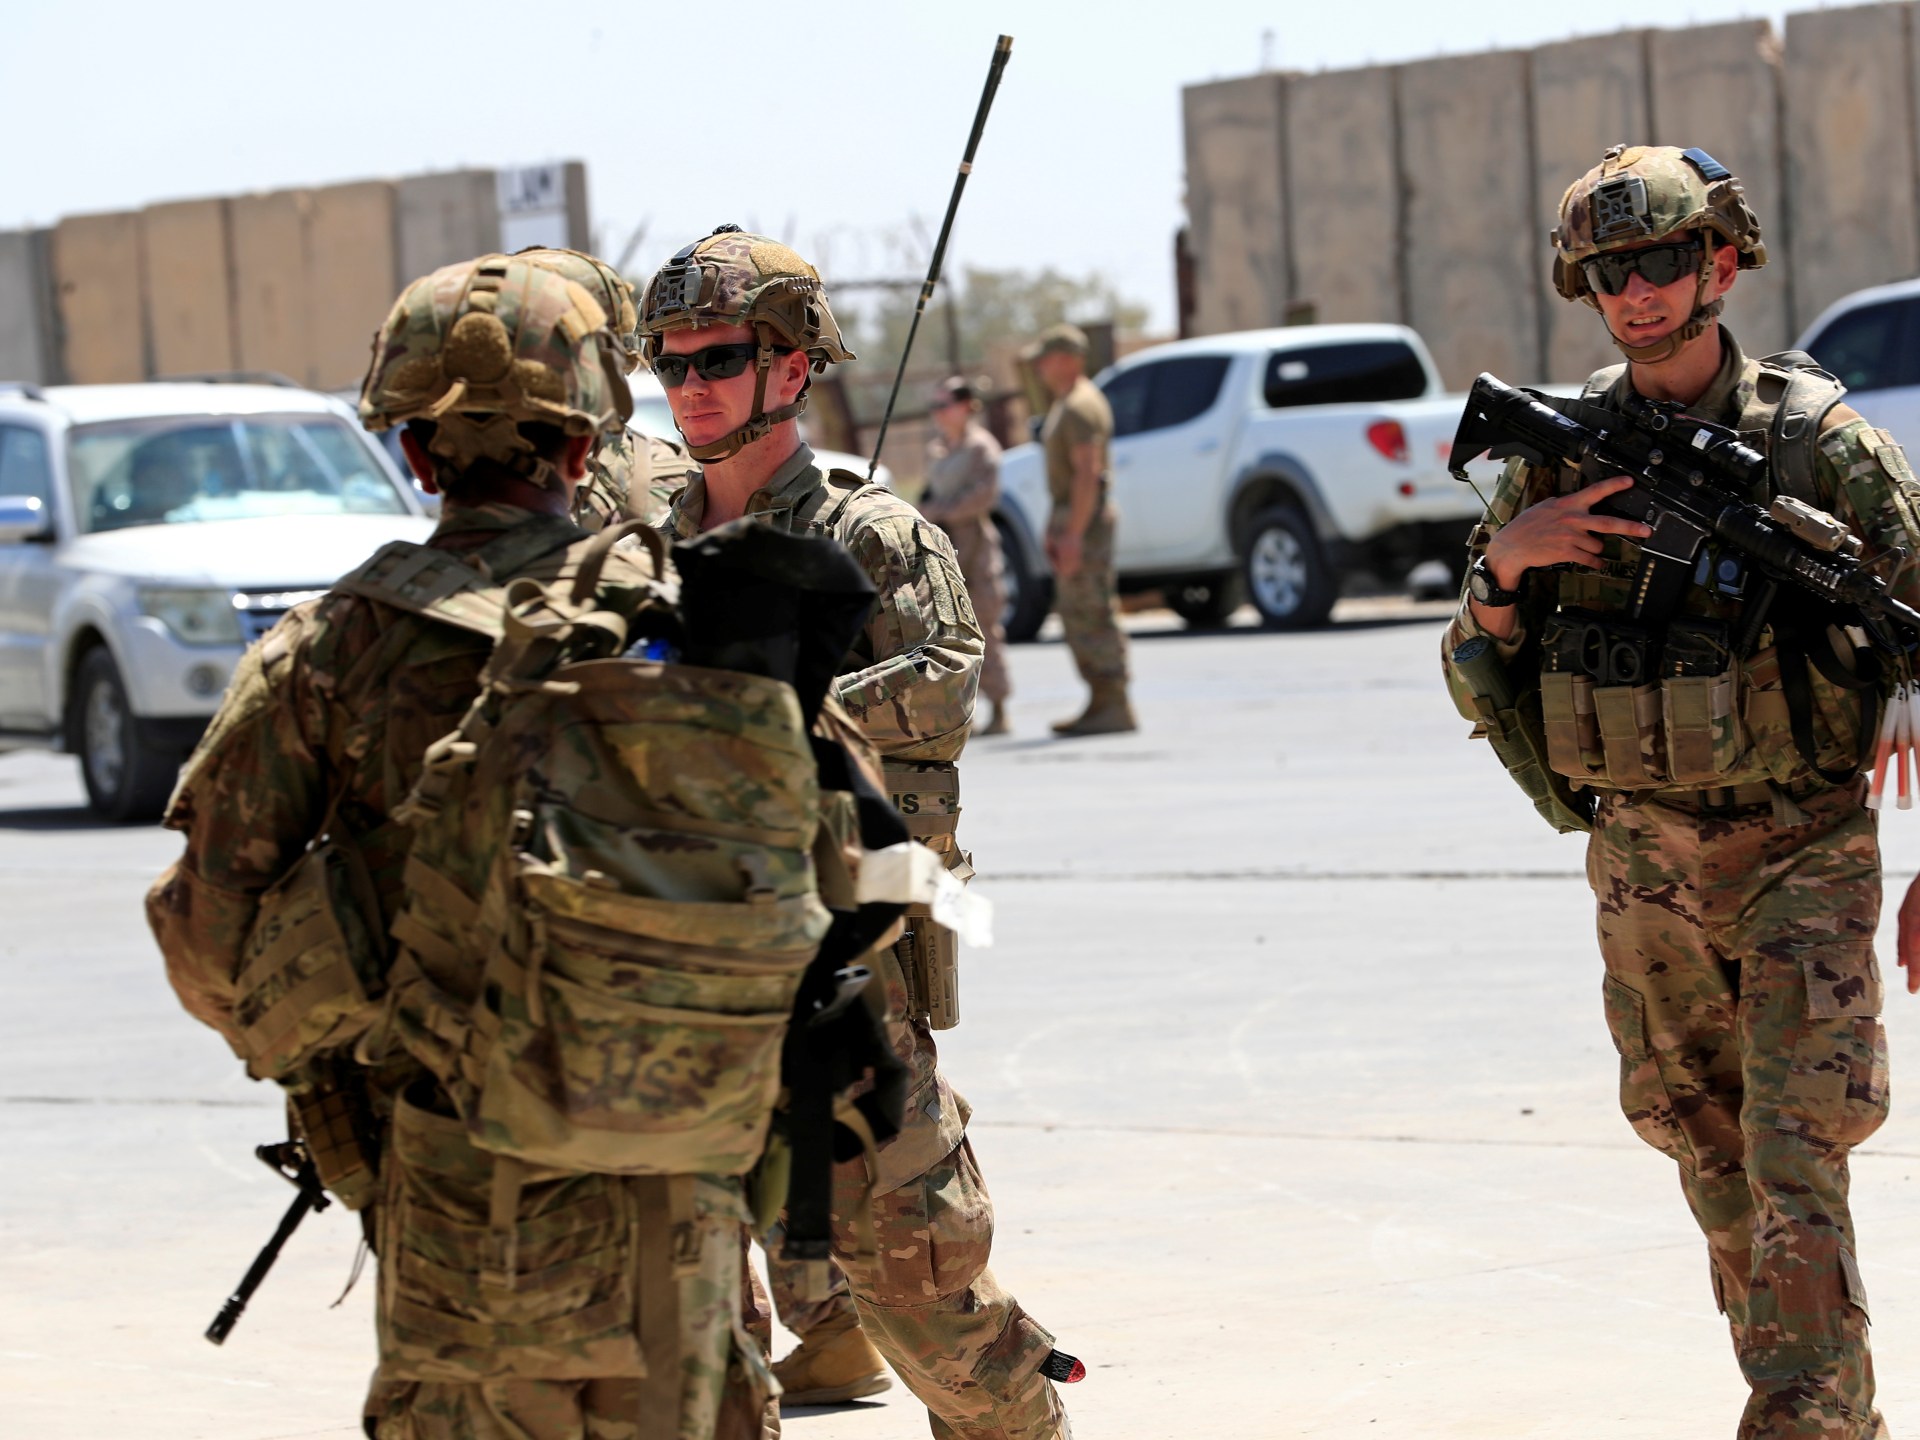 أميركا تشن غارات ضد منشأتين في العراق ردا على استهداف قواتها بالمنطقة | أخبار – البوكس نيوز